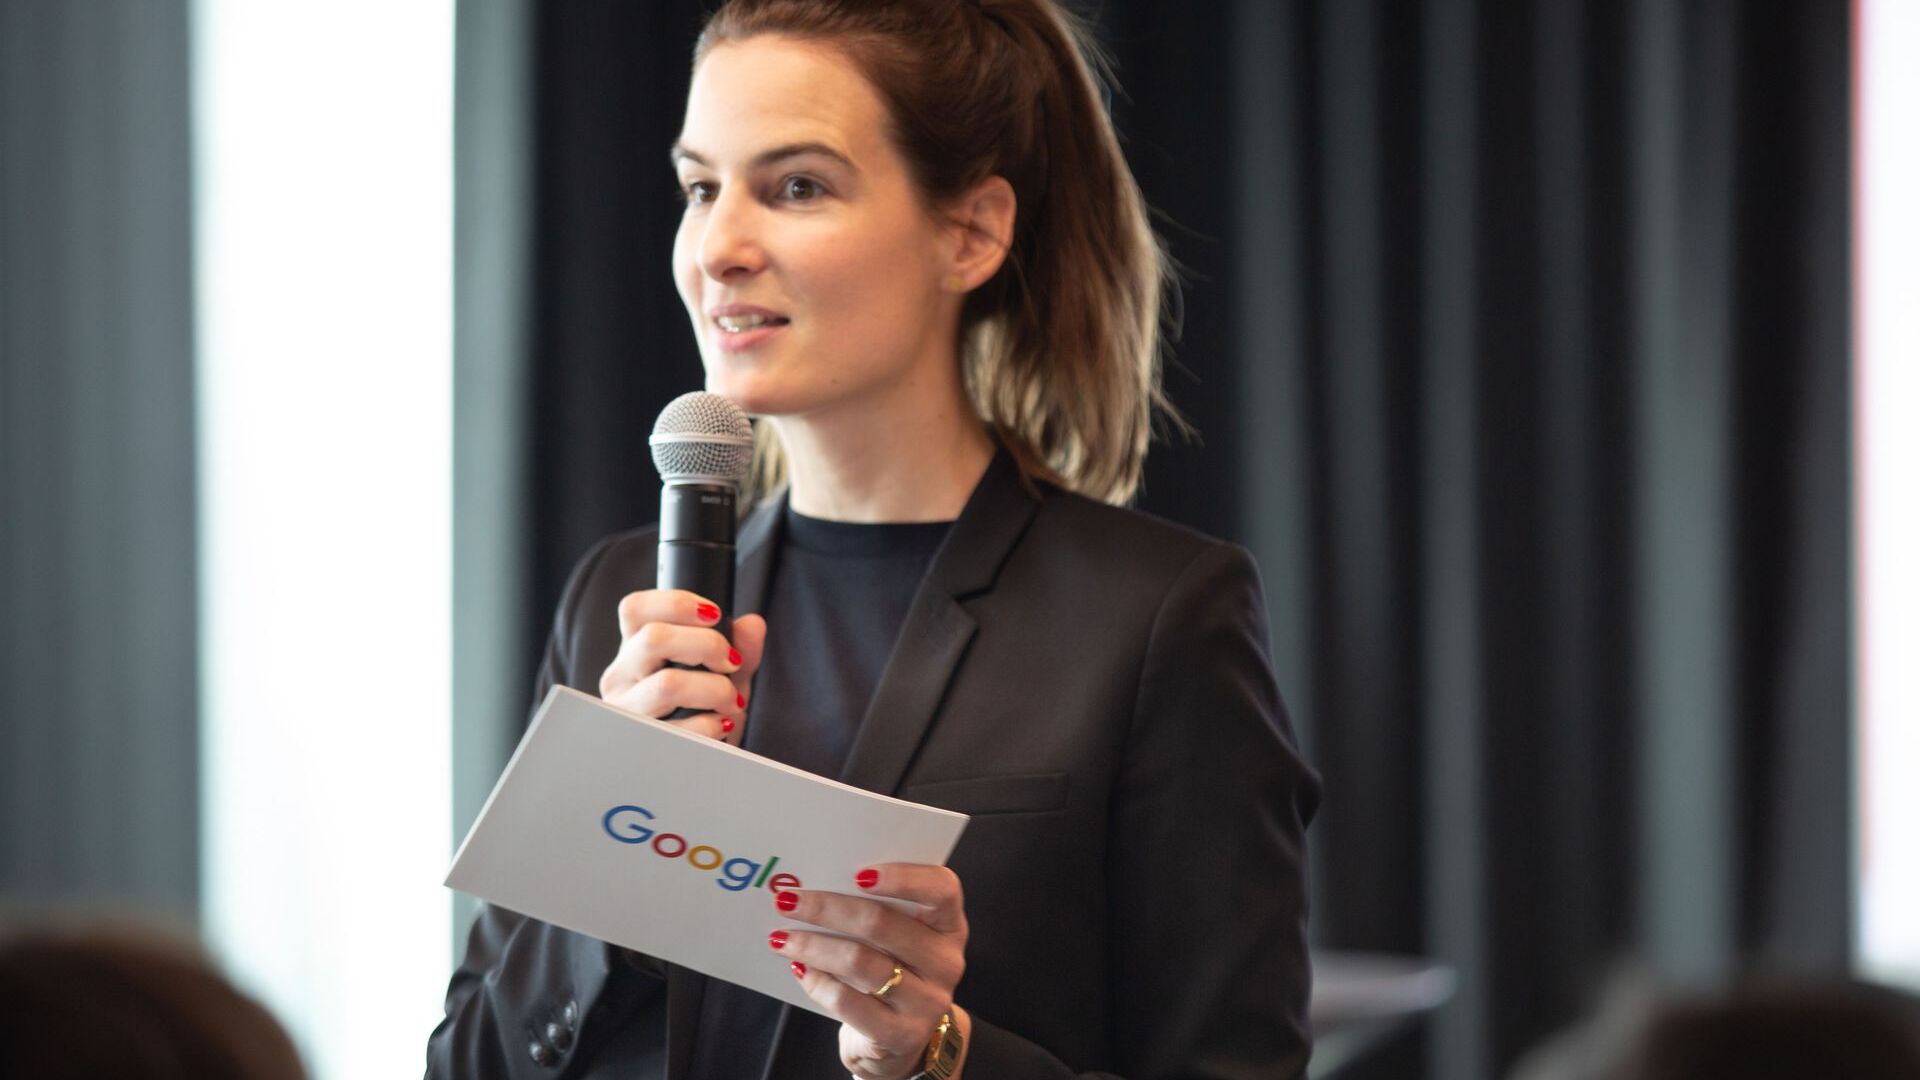 Pia De Carli, medijski tim Google Switzerland, prisustvovala je zvaničnom otvaranju novog Google Campus Europaallee u Cirihu 27. juna 2022.